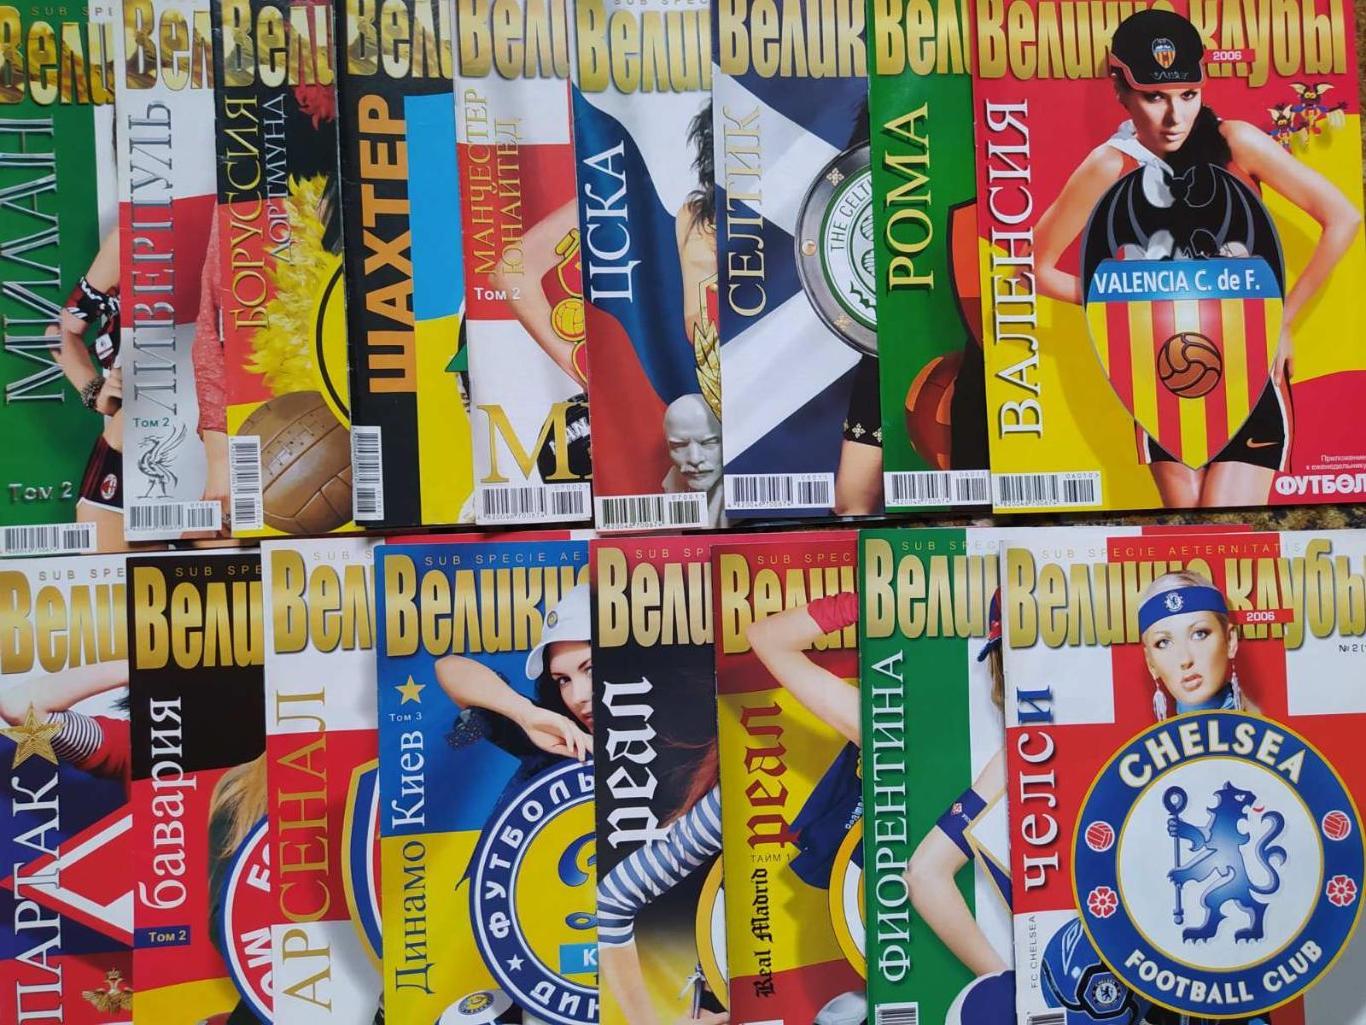 Приложение журнал Футбол Украина - Великие сборные,клубы,игроки - полная версия 1